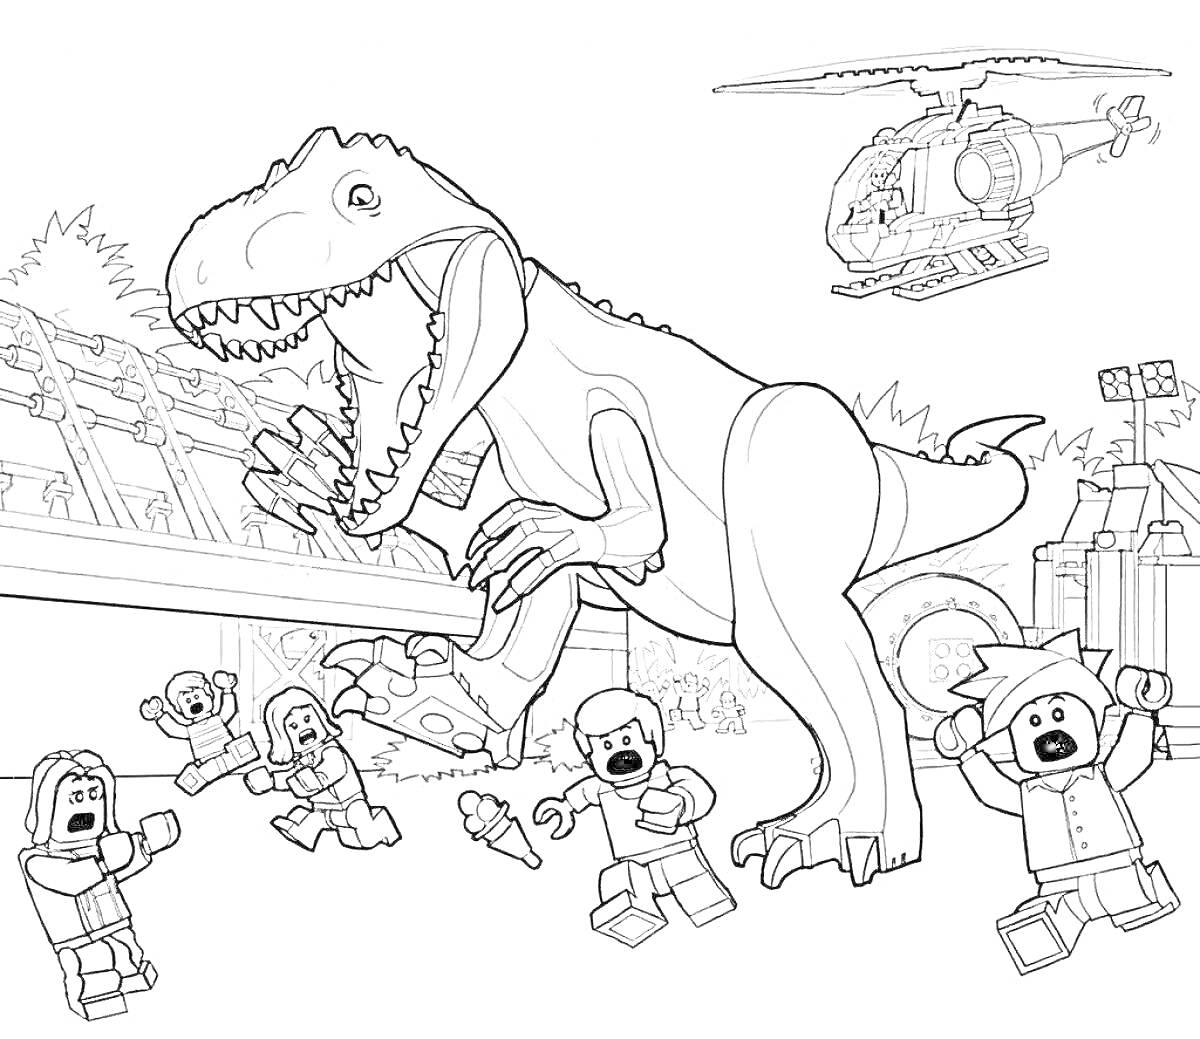 Динозавр атакует людей с вертолетом в мире Юрского периода